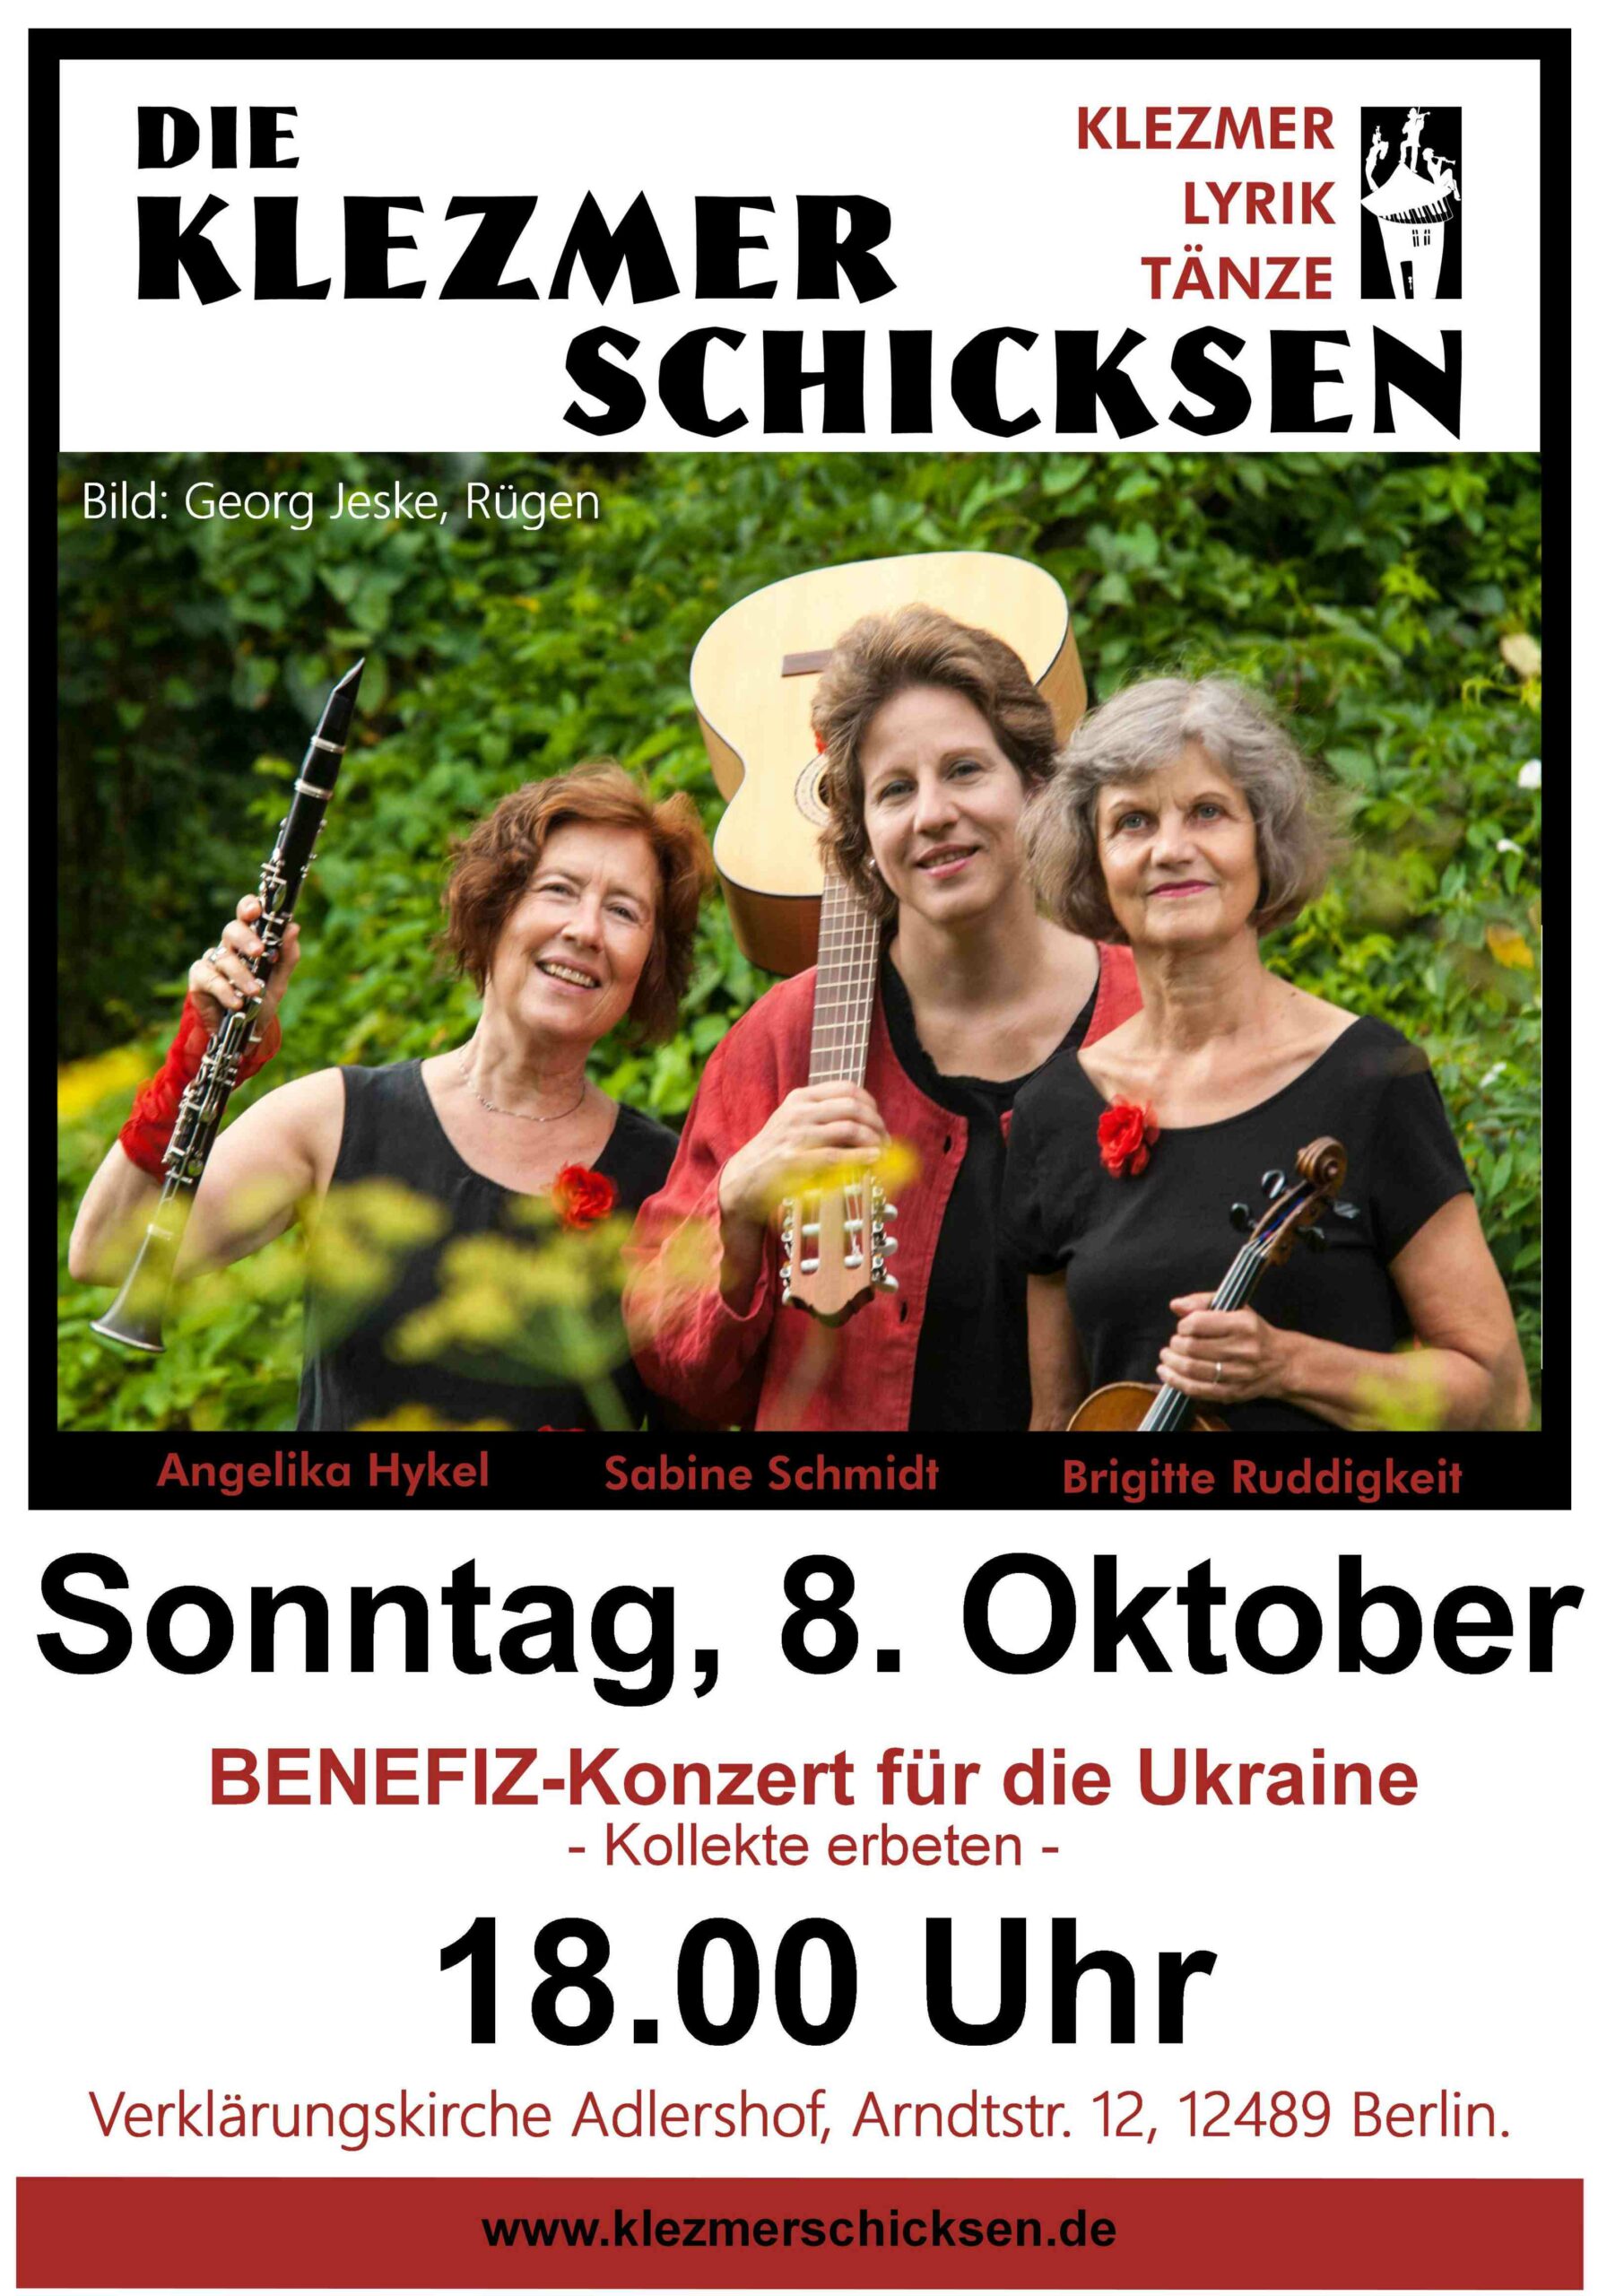 Plakat zur Ankündigung des Konzerts der Klezmerschicksen